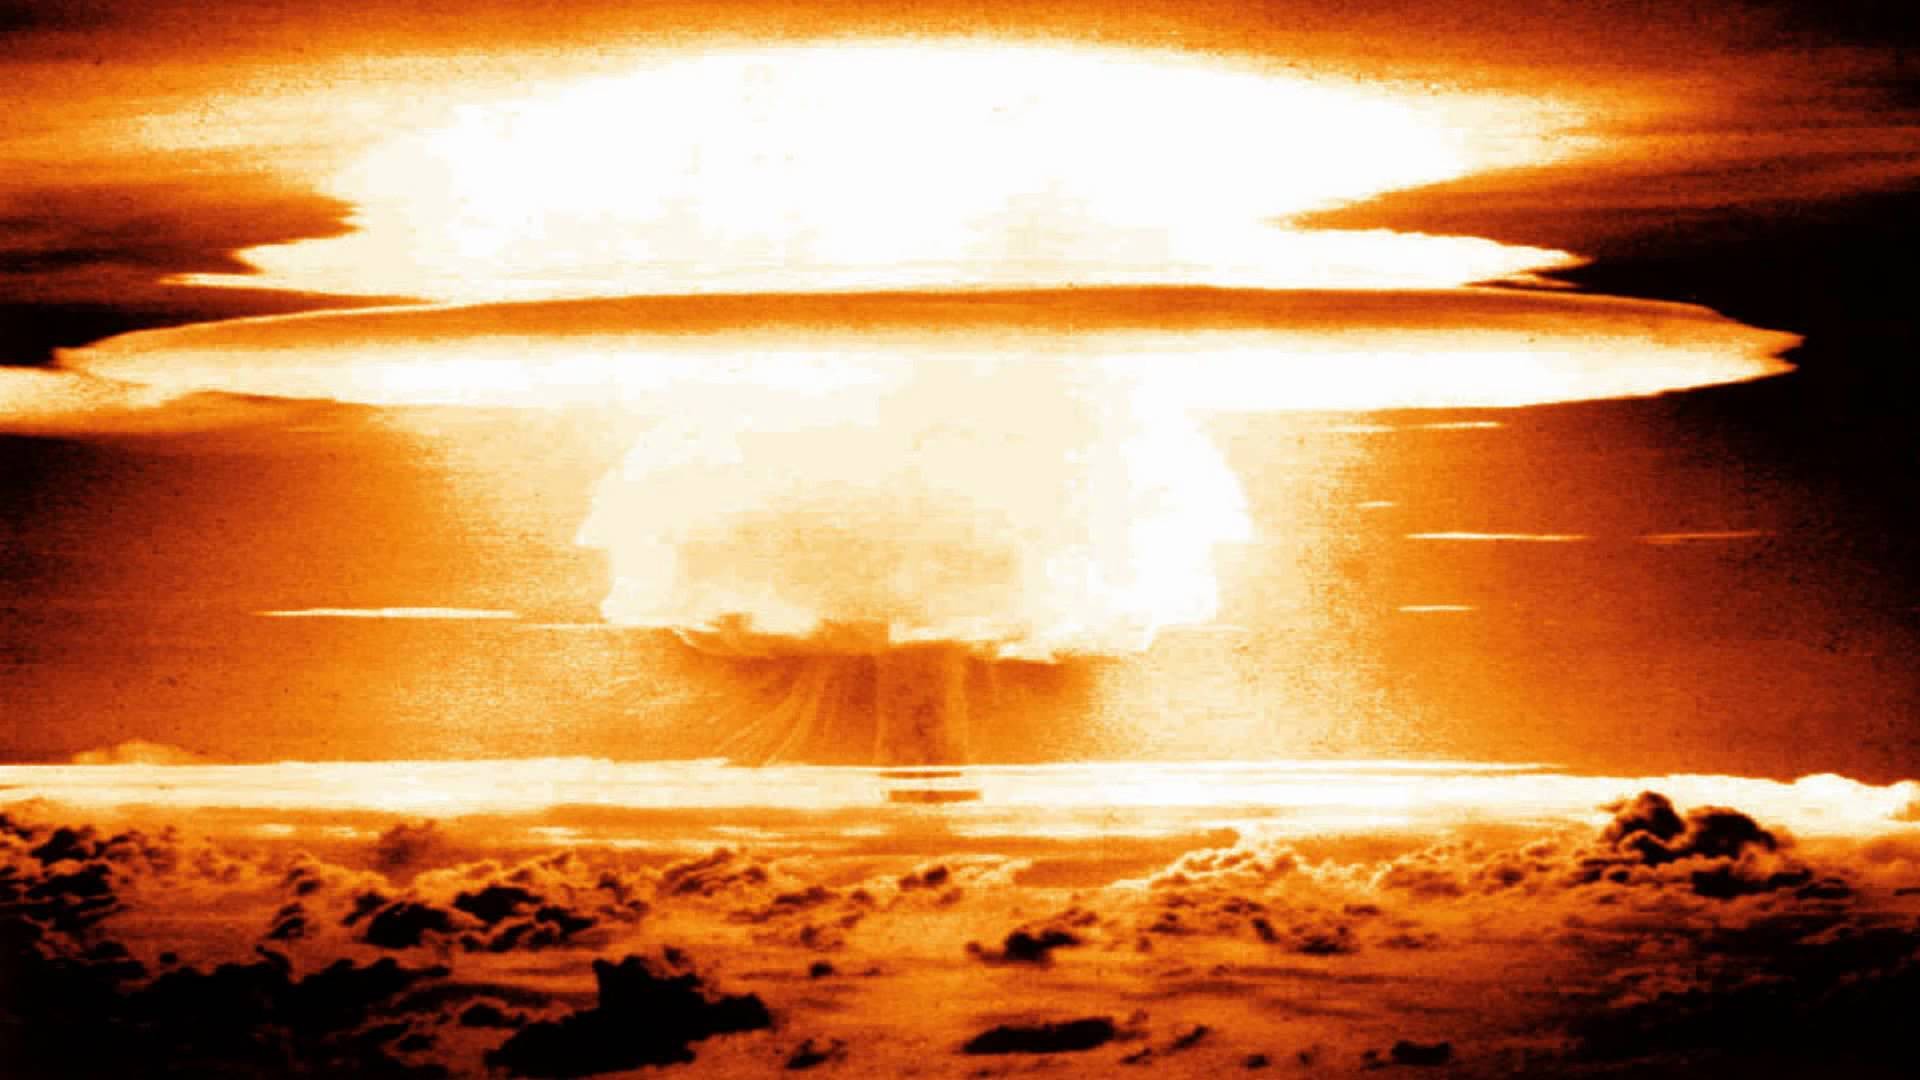 第647期圖-The WIRE https://thewire.in/science/how-do-you-know-when-a-nuclear-weapon-test-has-happened